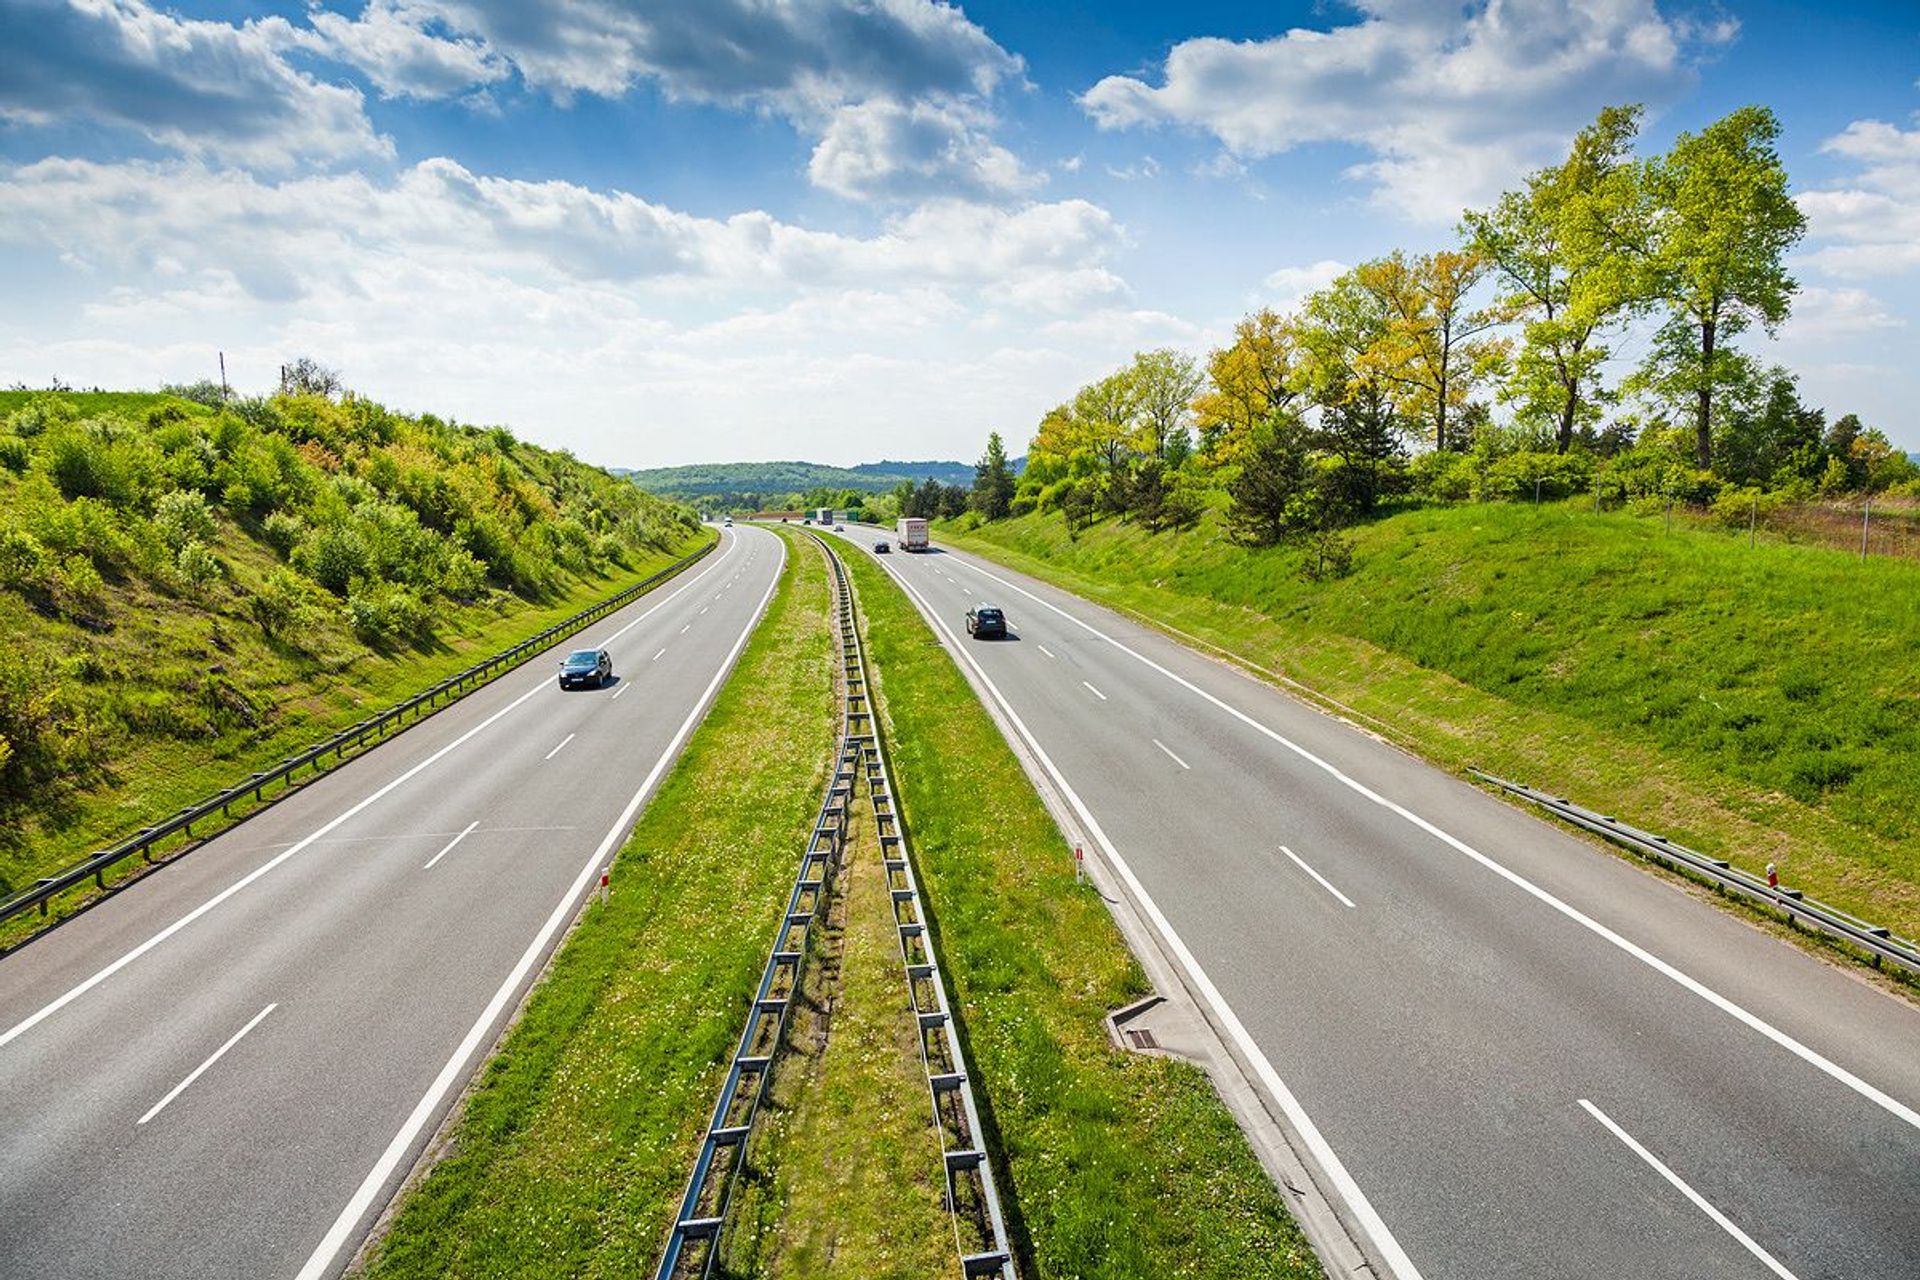  GDDKiA ogłosiła przetarg na remont podwrocławskiego odcinka autostrady A4